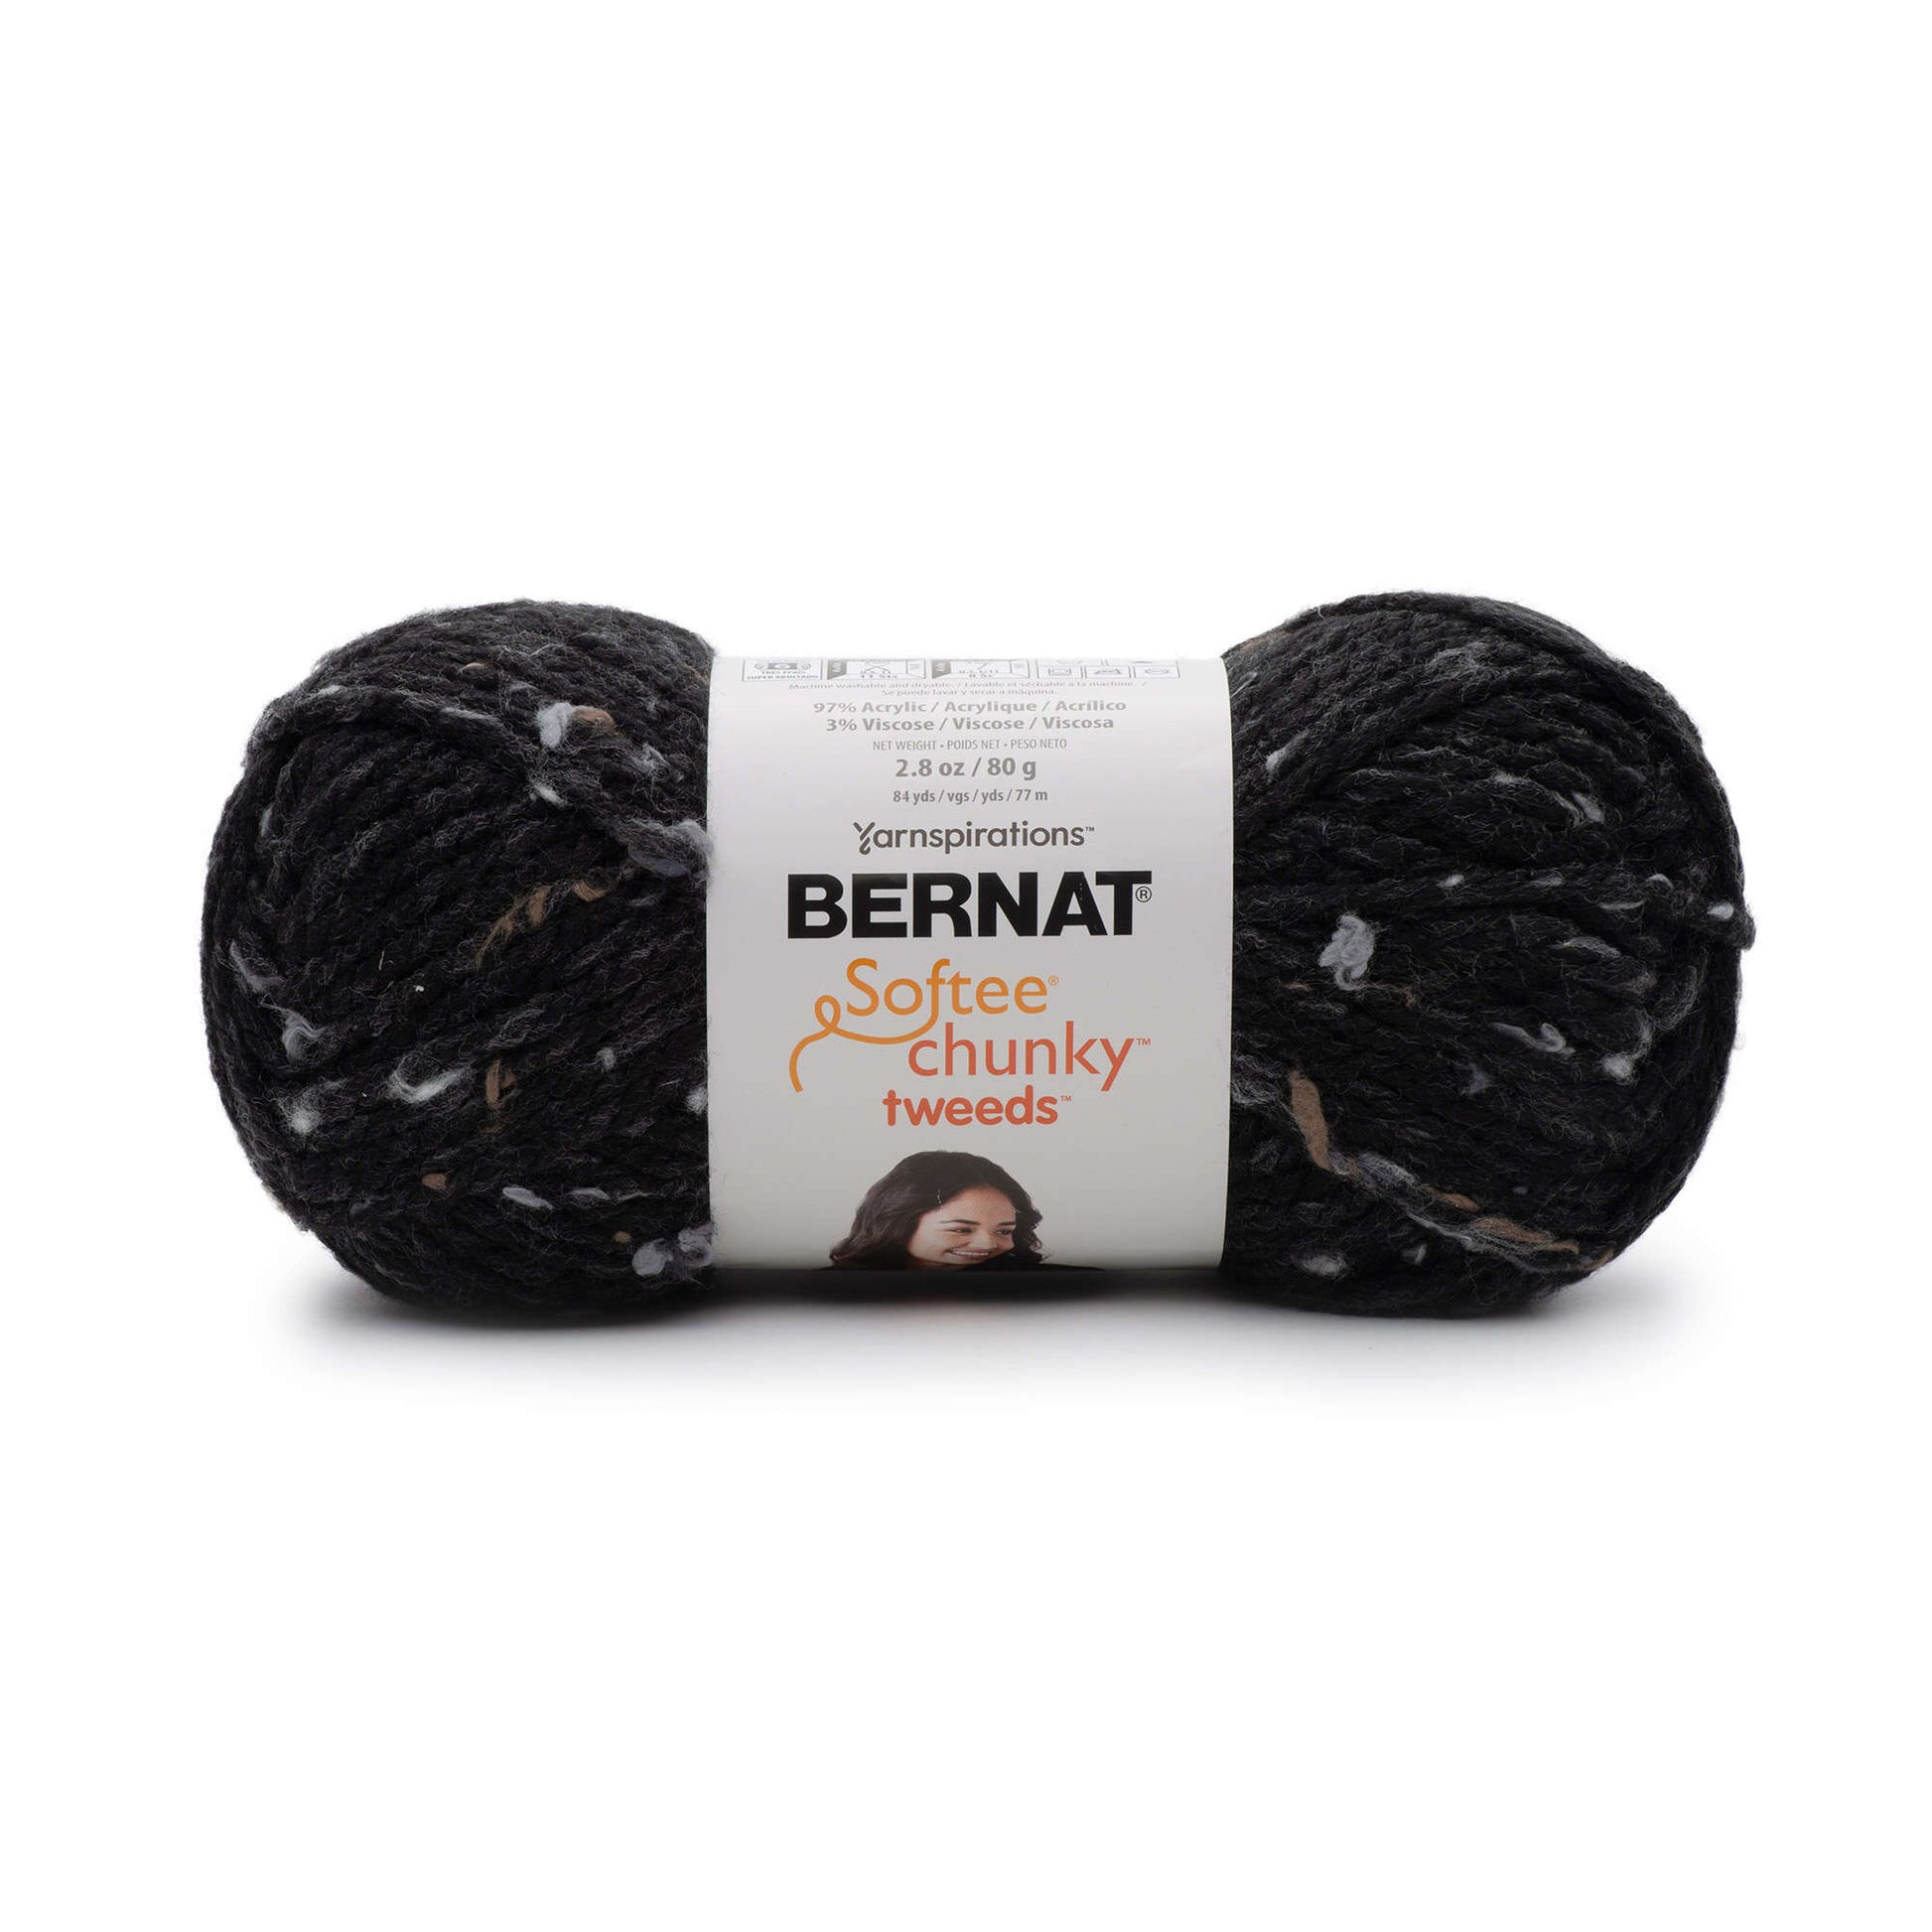 Bernat Softee Chunky Tweeds Yarn - Discontinued Shades